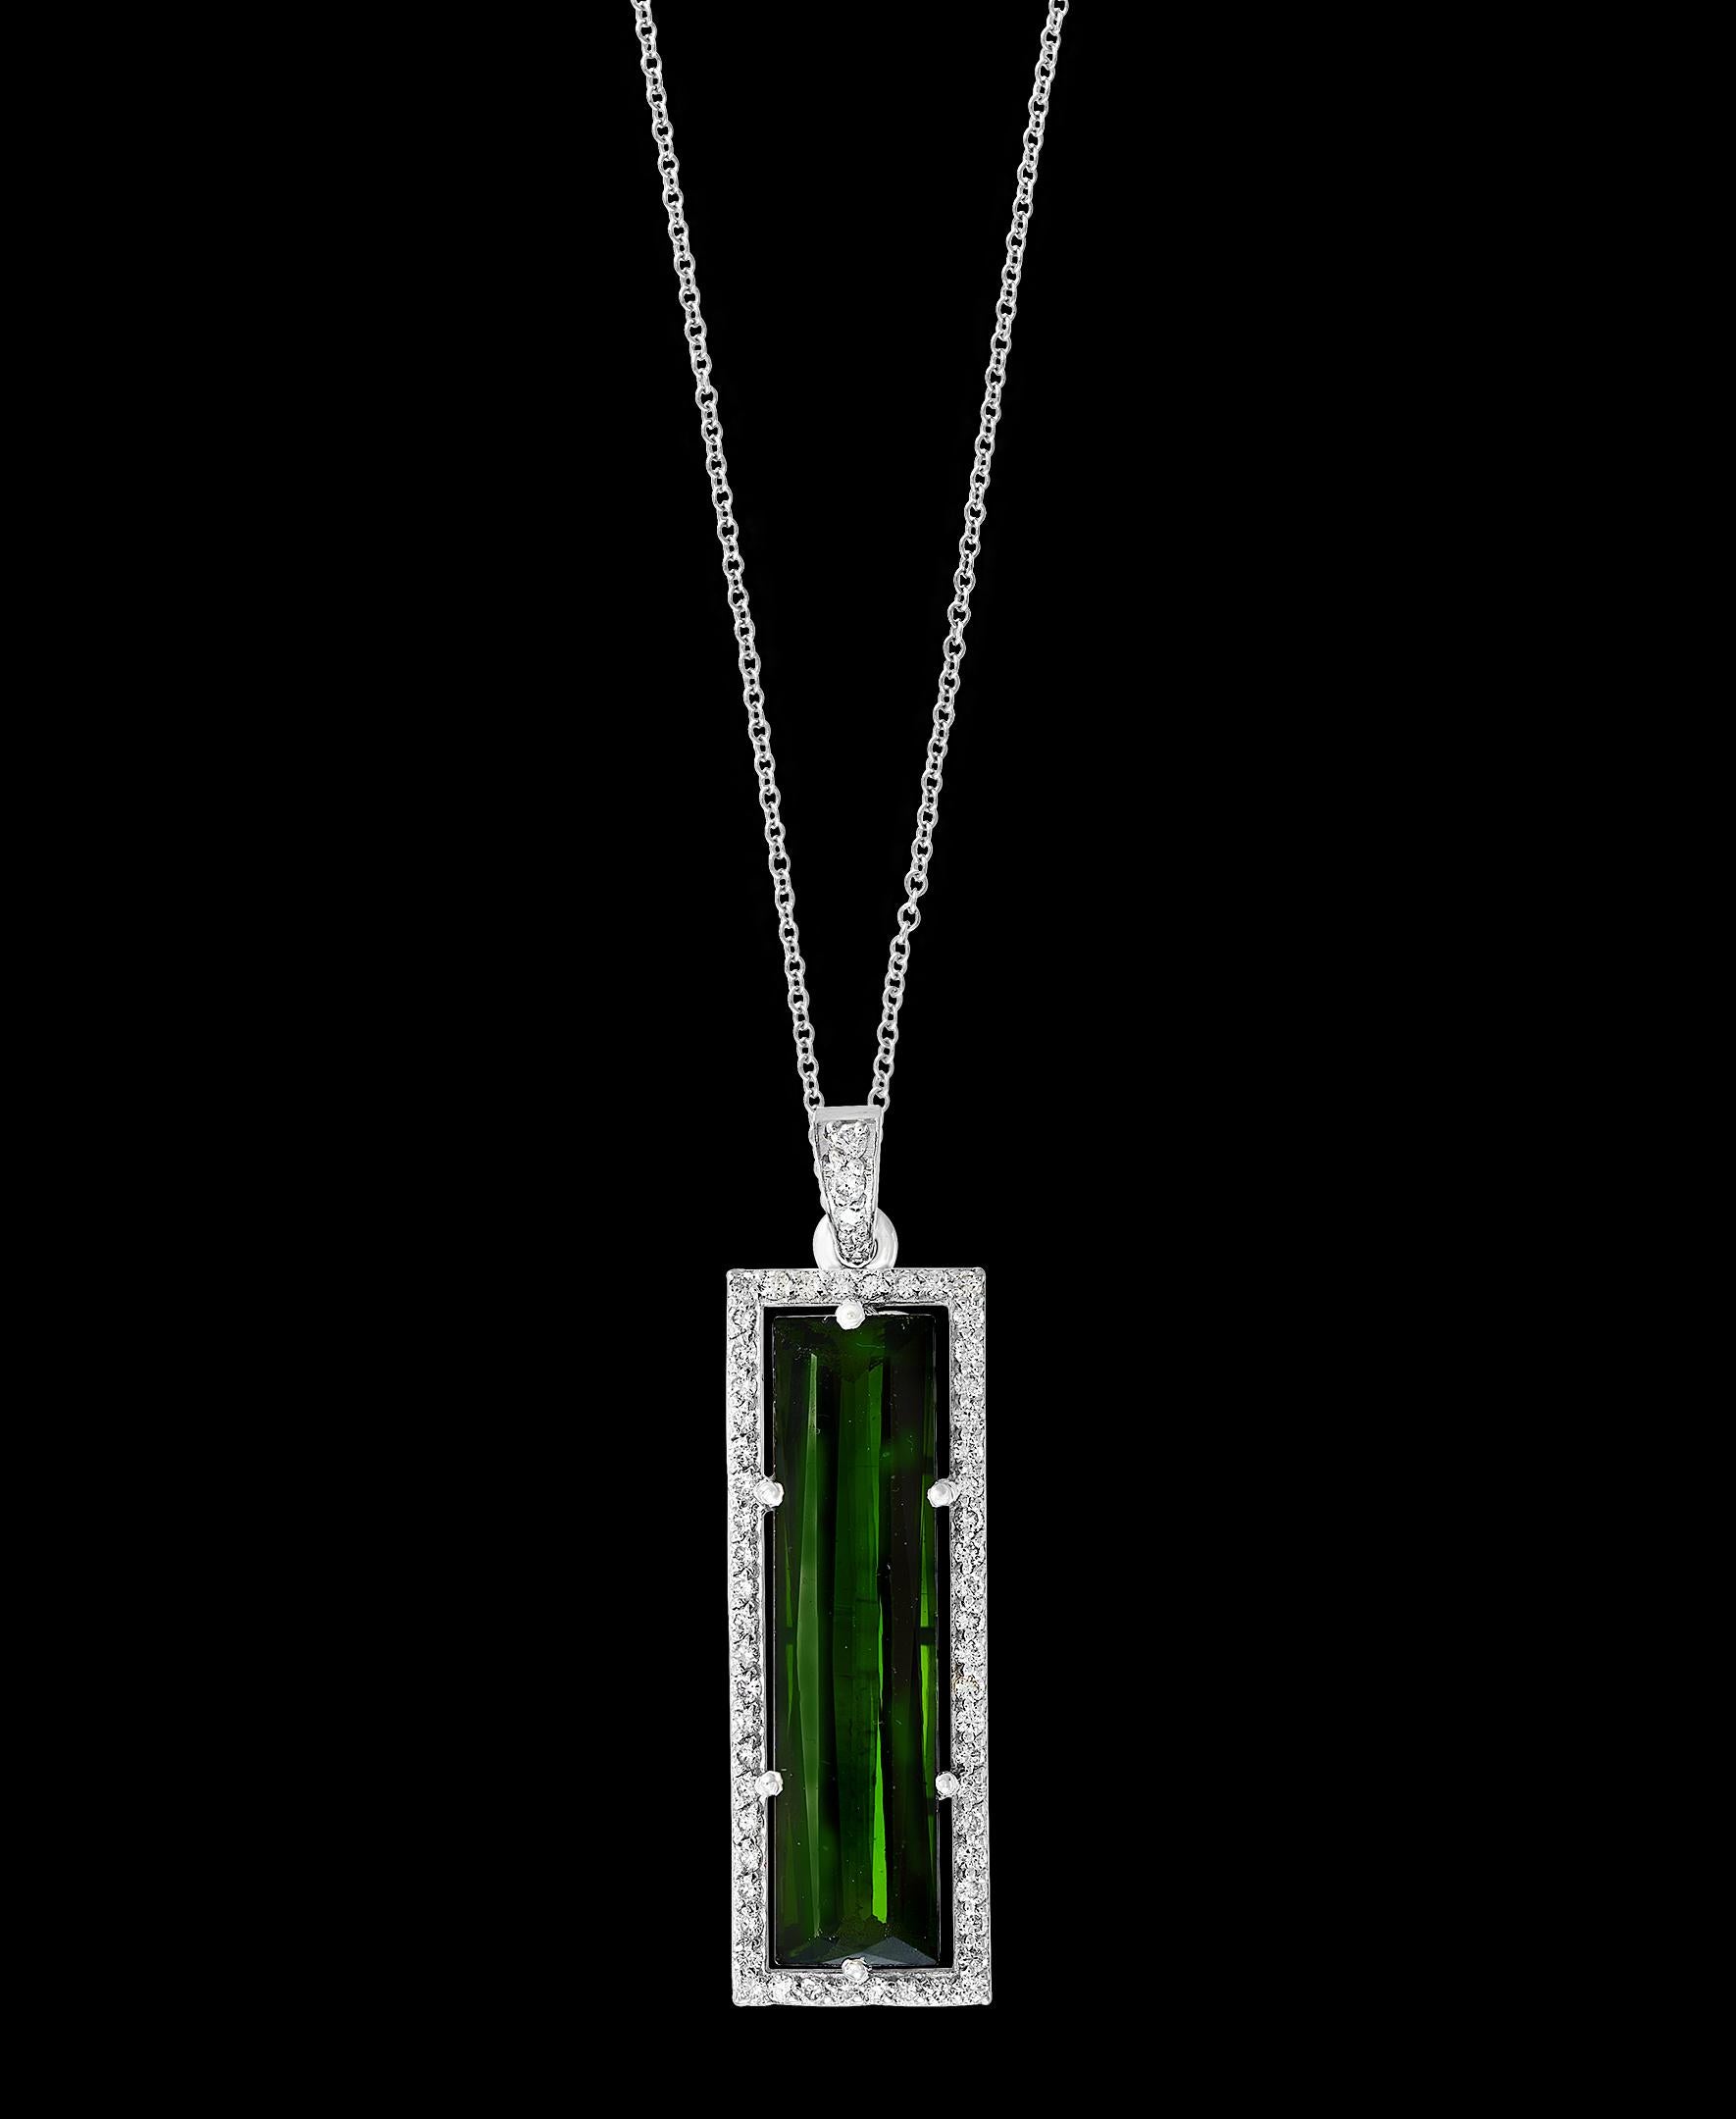 11 Carat Green Tourmaline and 1.2 Carat Diamond Pendant / Necklace 18 Karat Gold 3